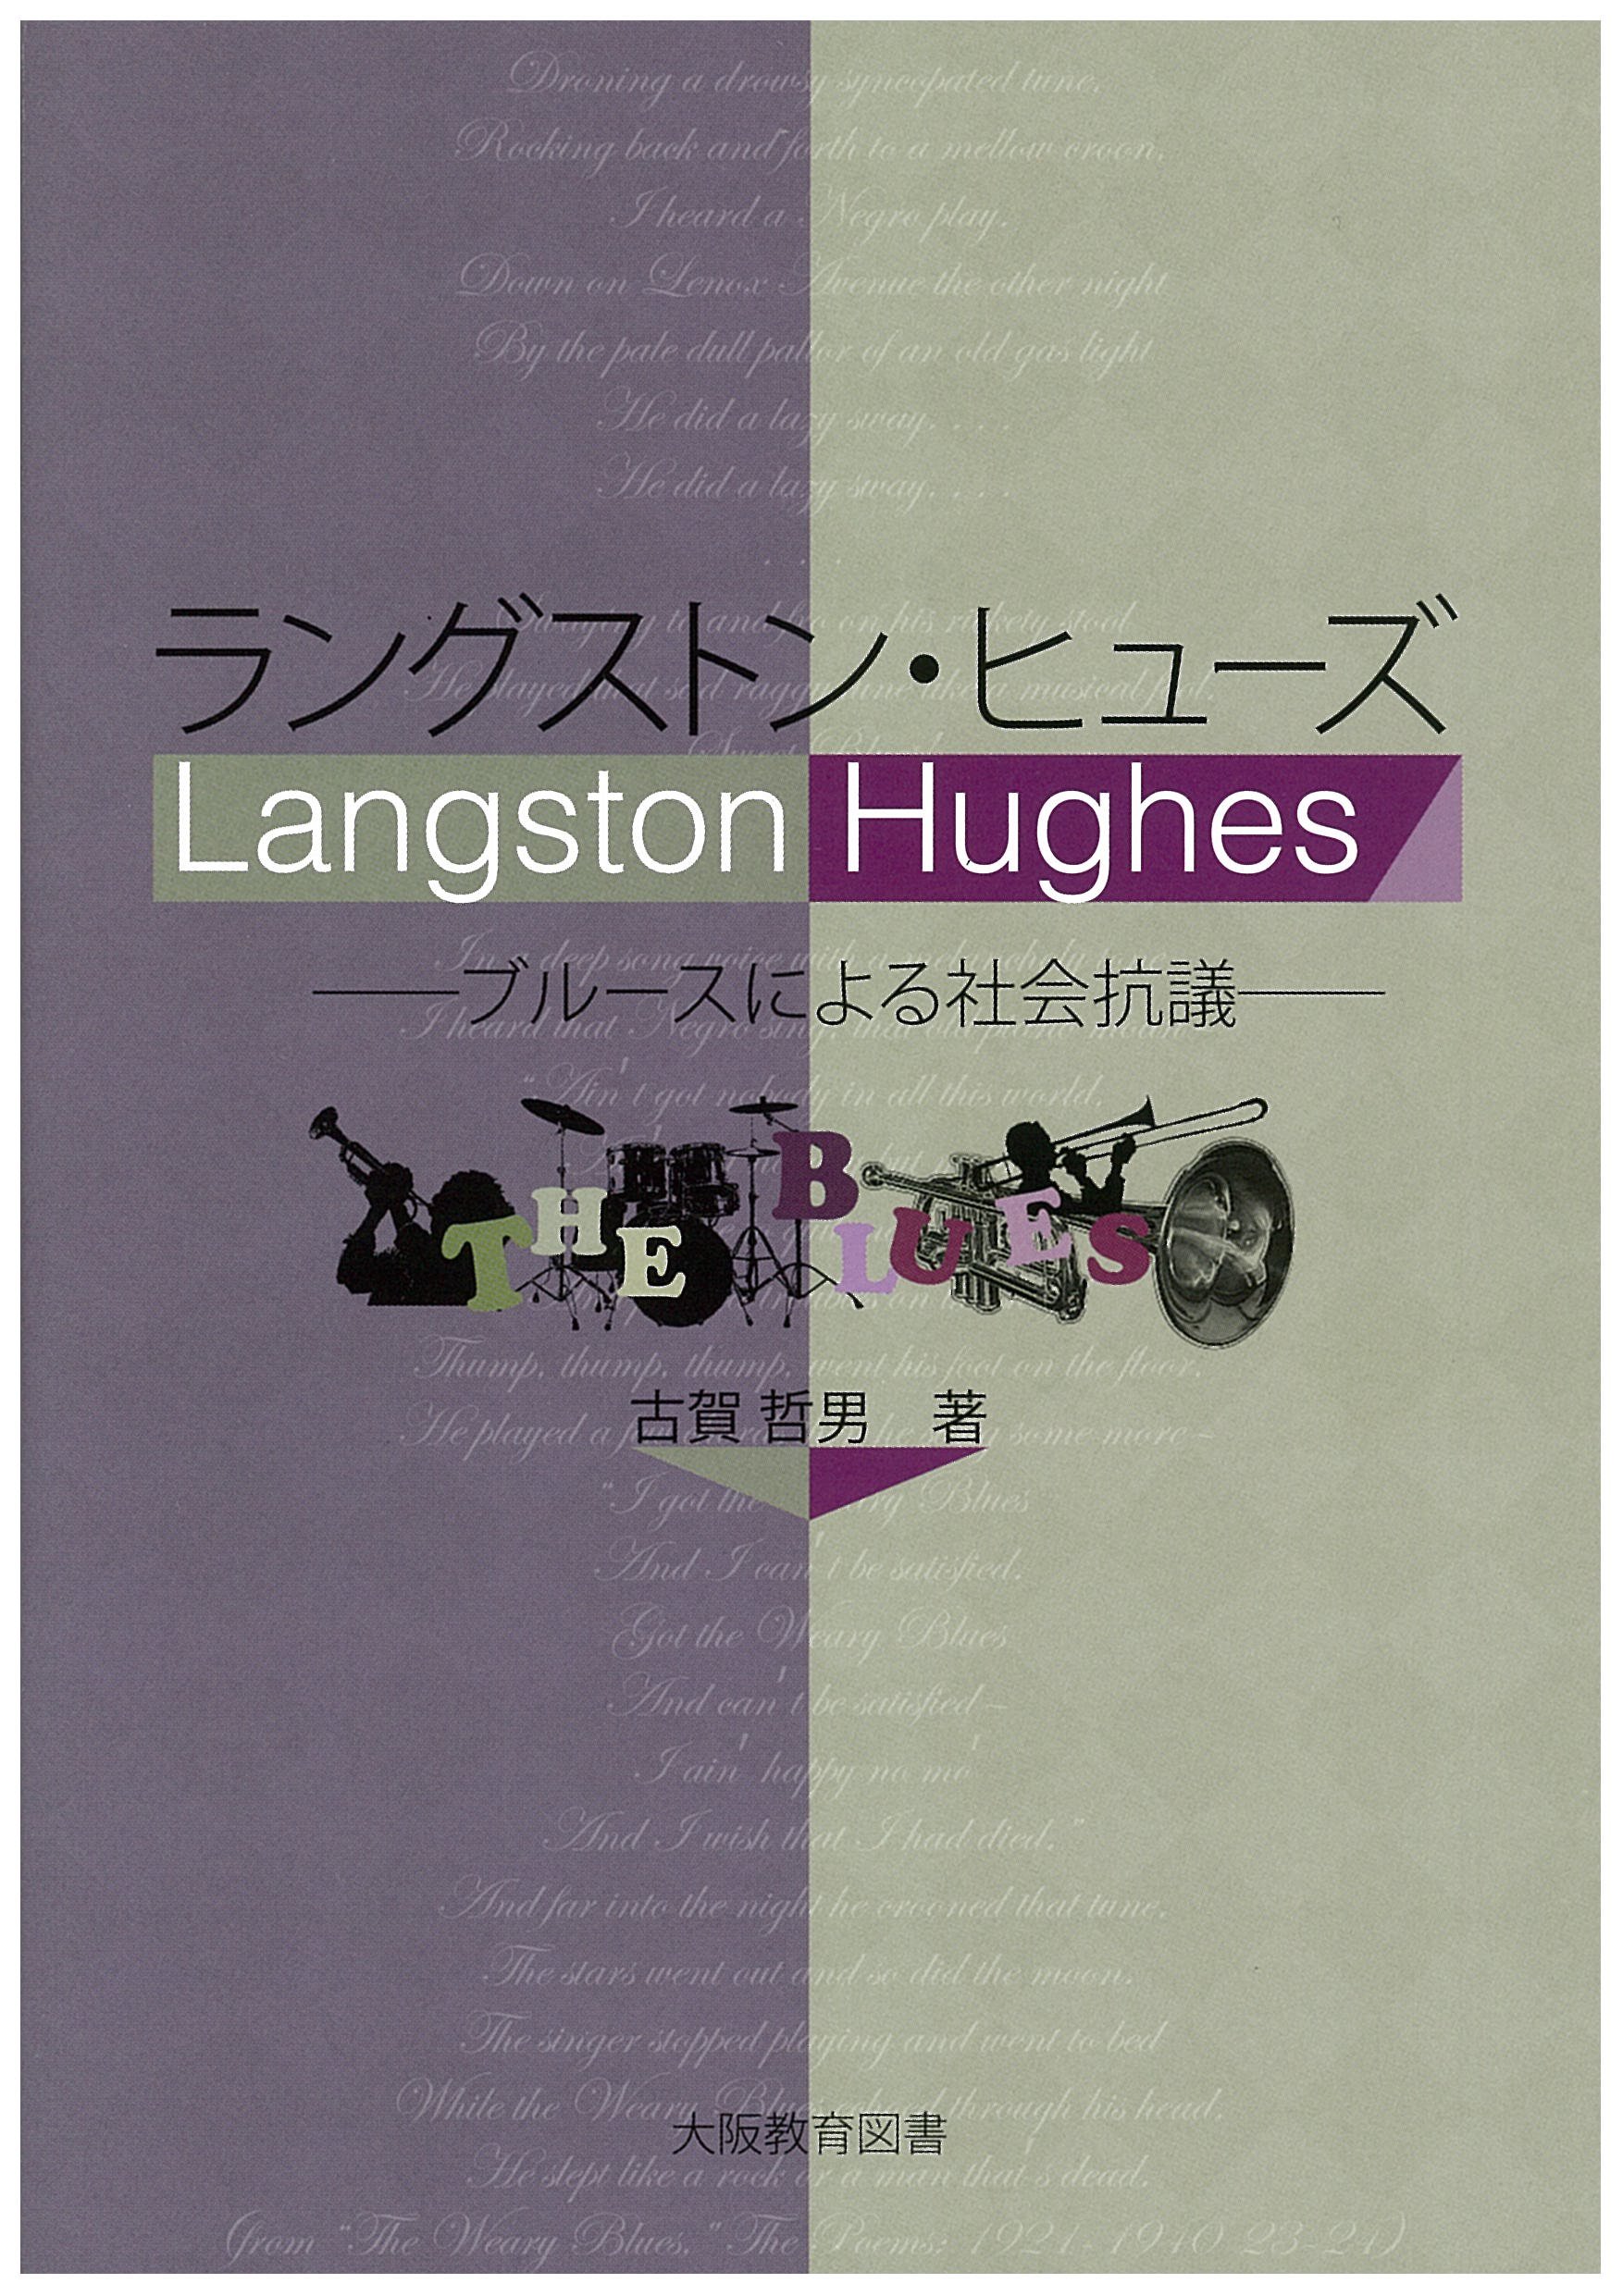 新刊紹介：古賀哲男 著『ラングストン・ヒューズ──ブルースによる社会抗議』